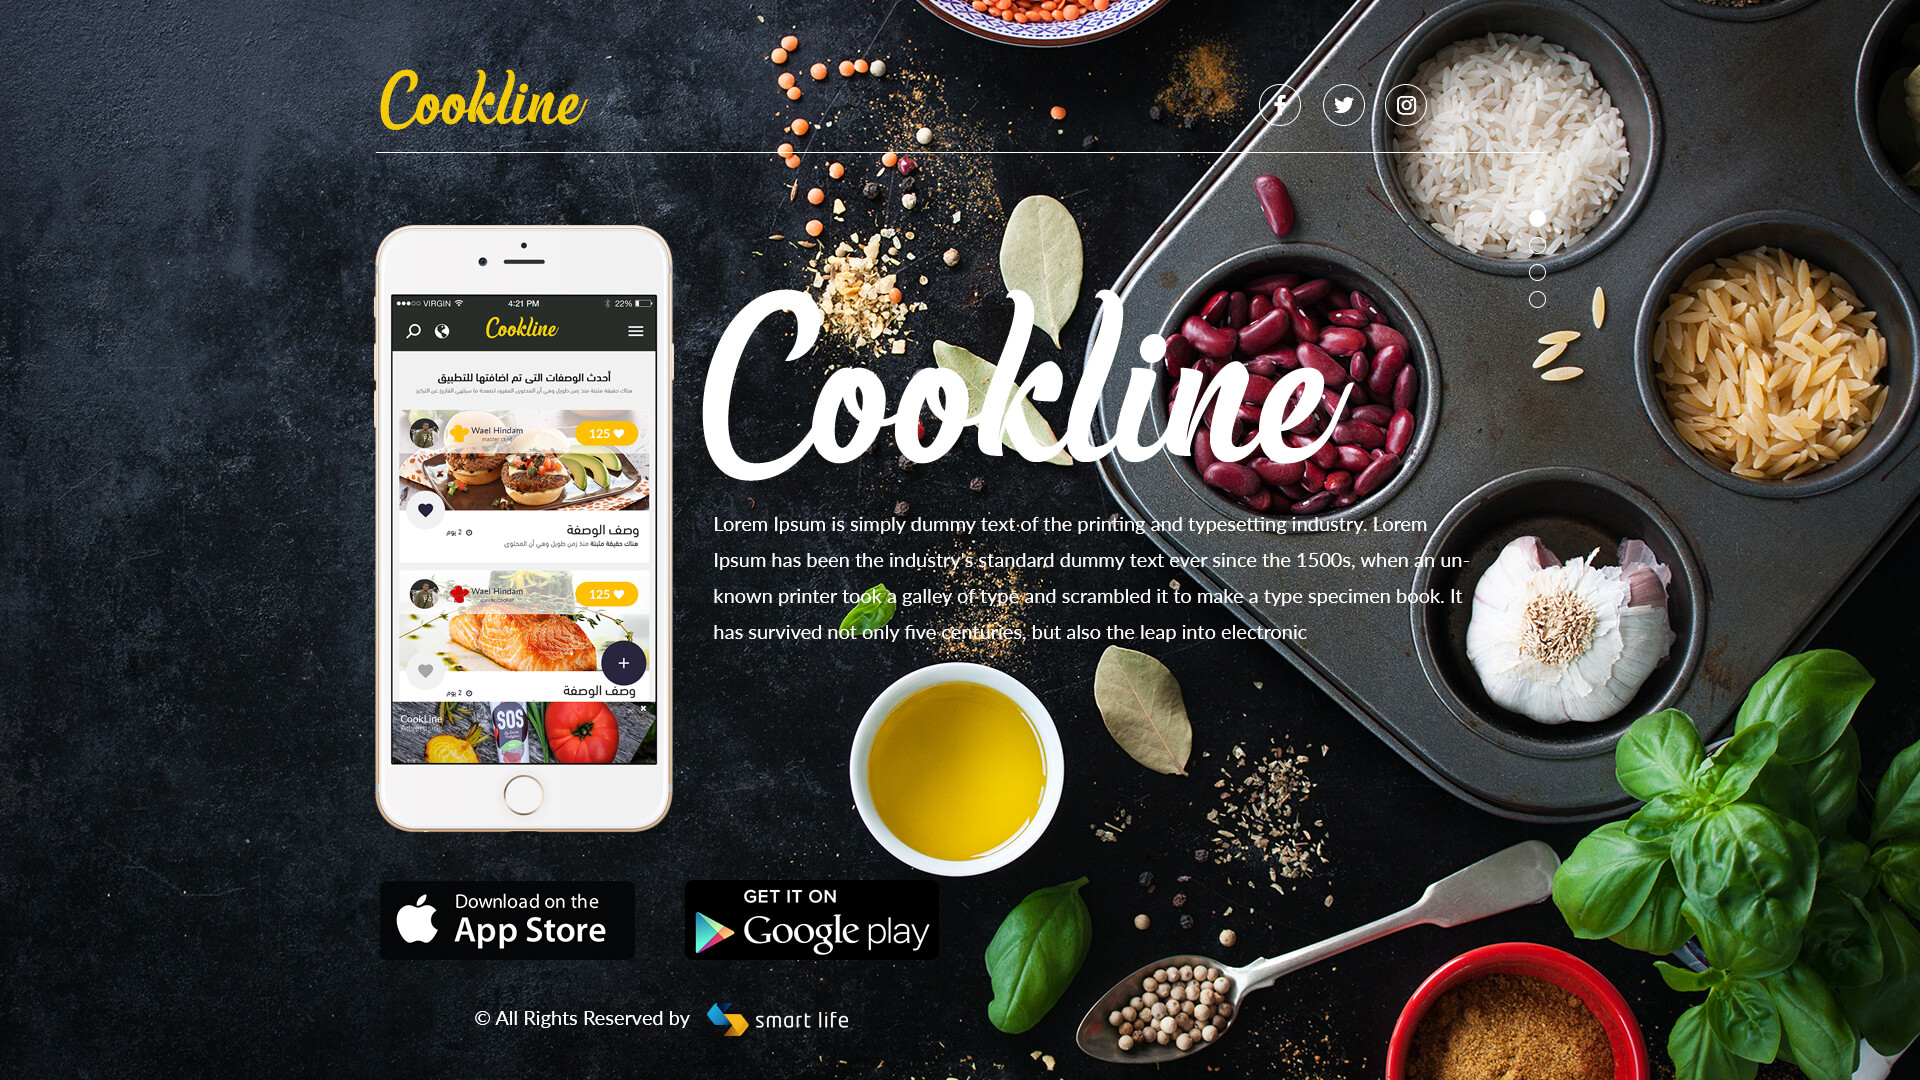 Cook Line app